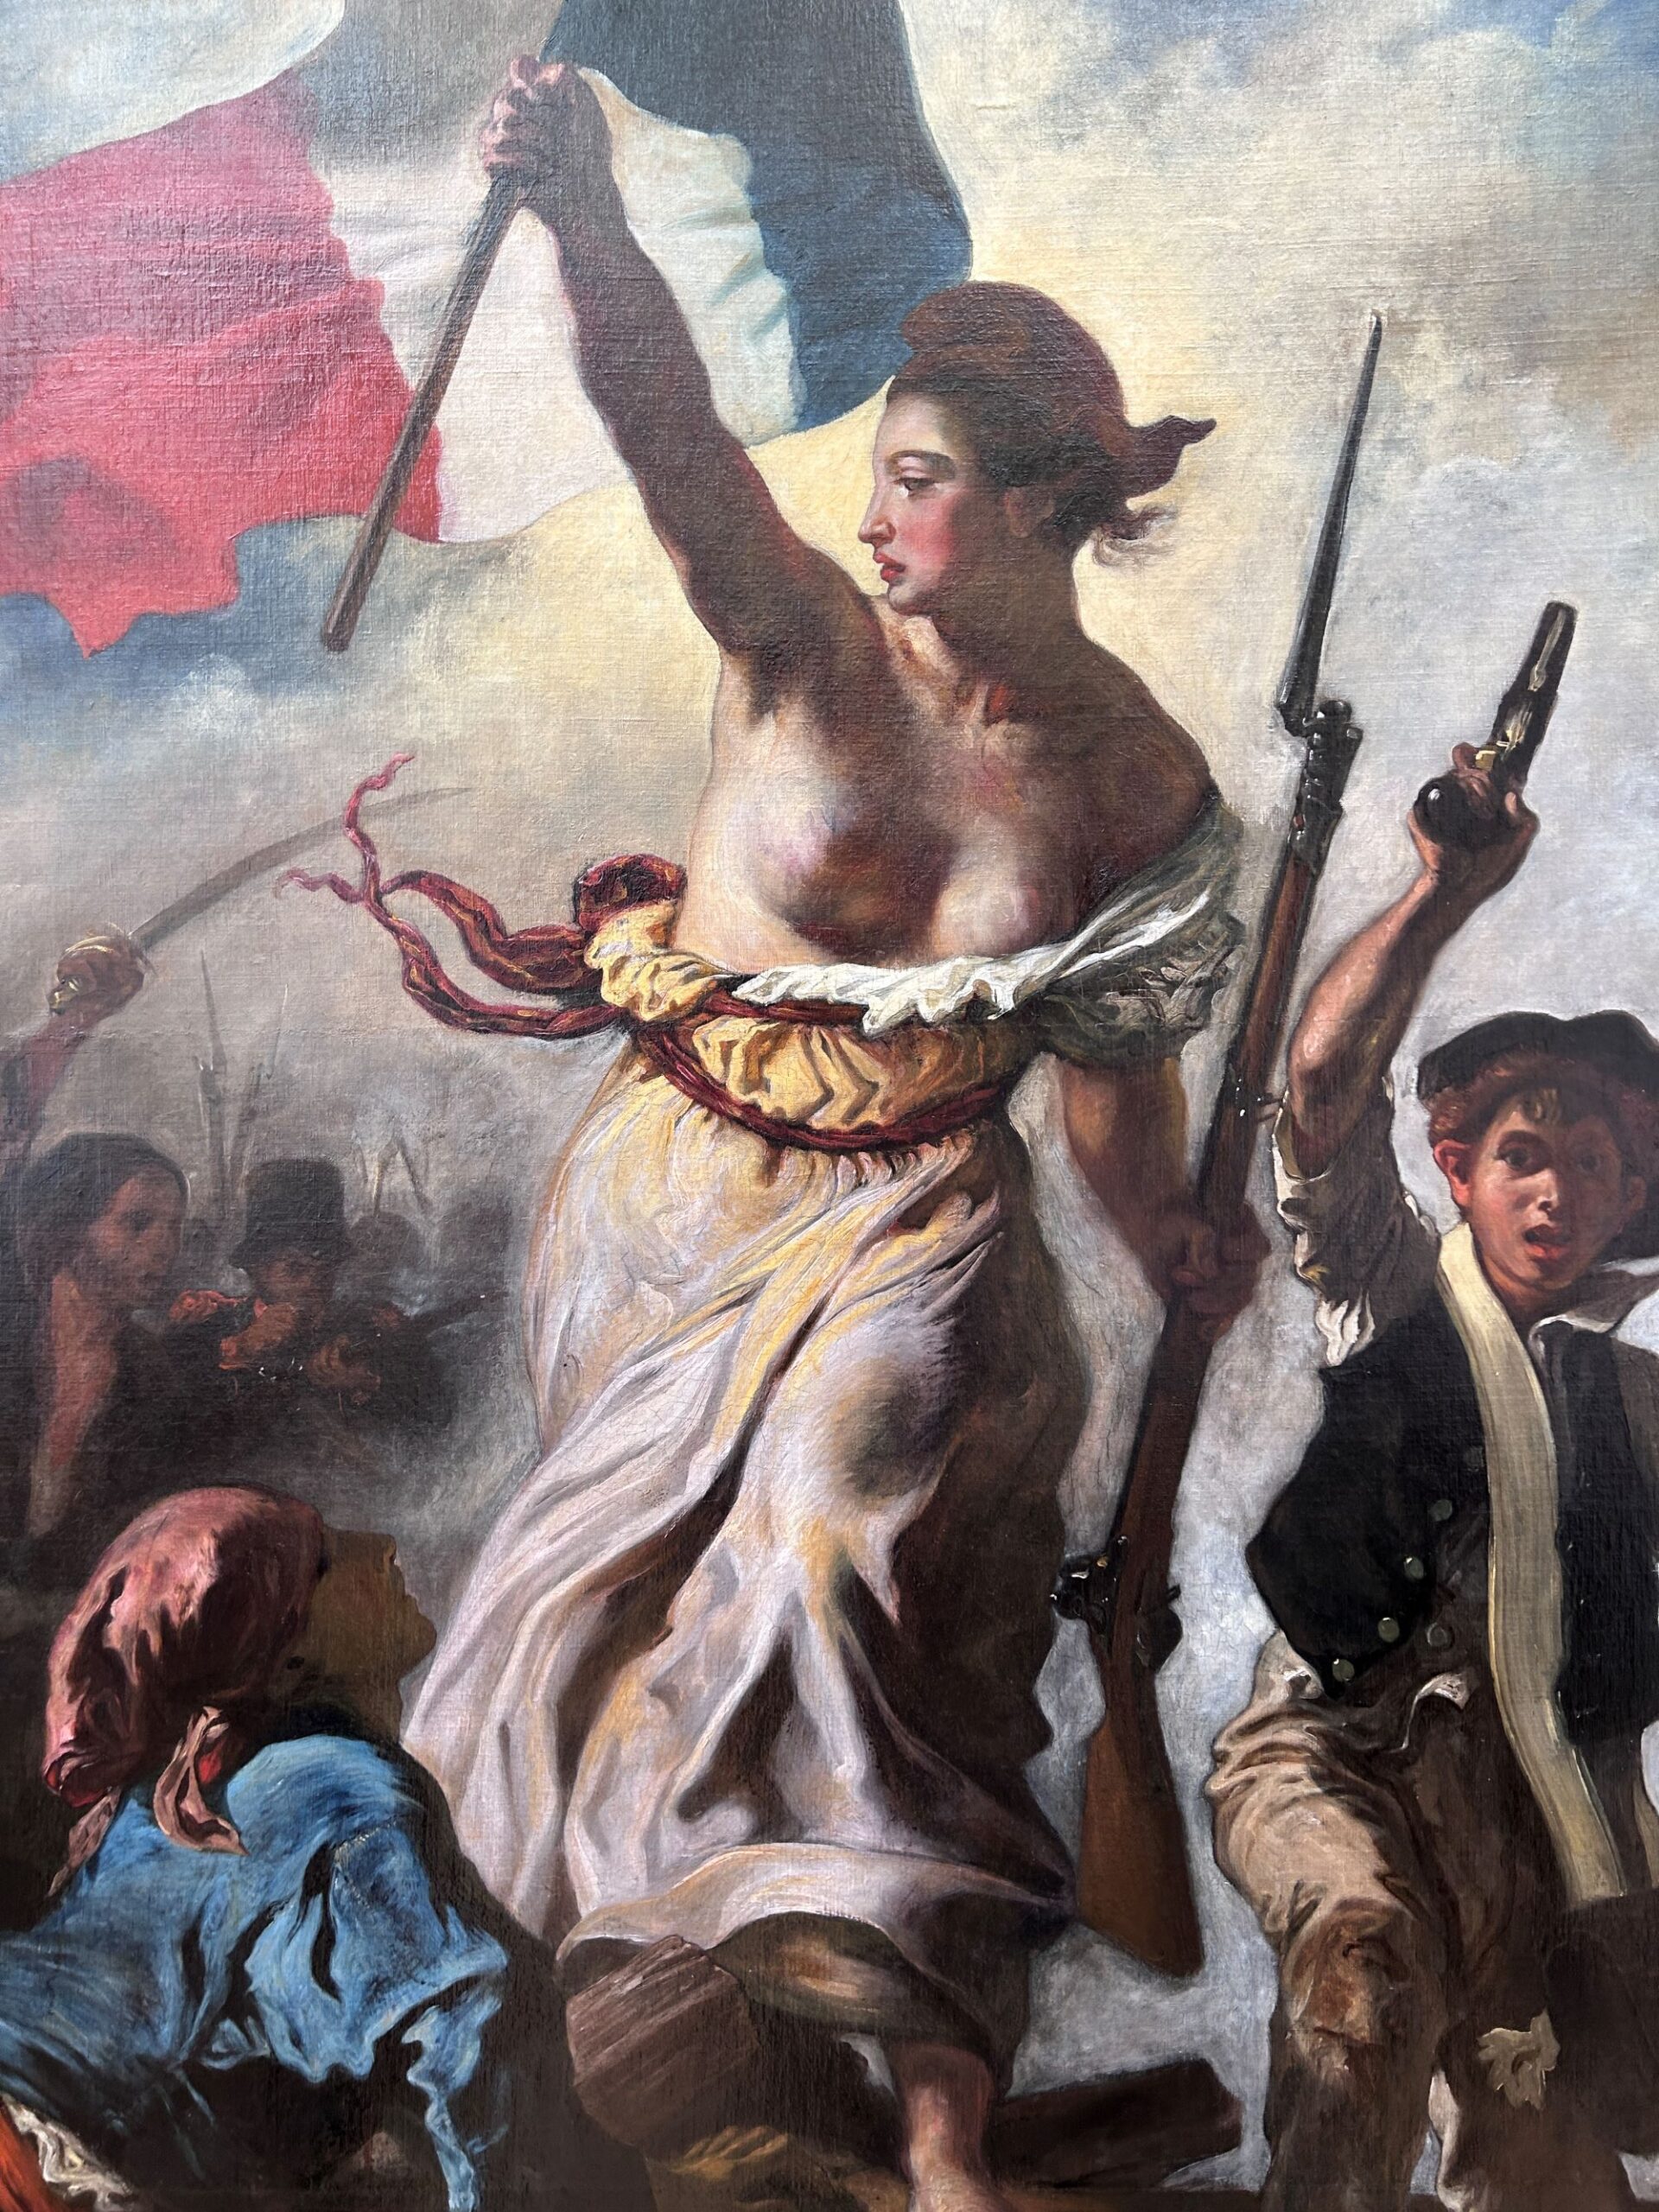 Eugène Delacroix (1798-1863), La Liberté guidant le peuple (détail après restauration), 1830. Huile sur toile, 260 x 325 cm. Paris, département des Peintures du musée du Louvre. © OPM